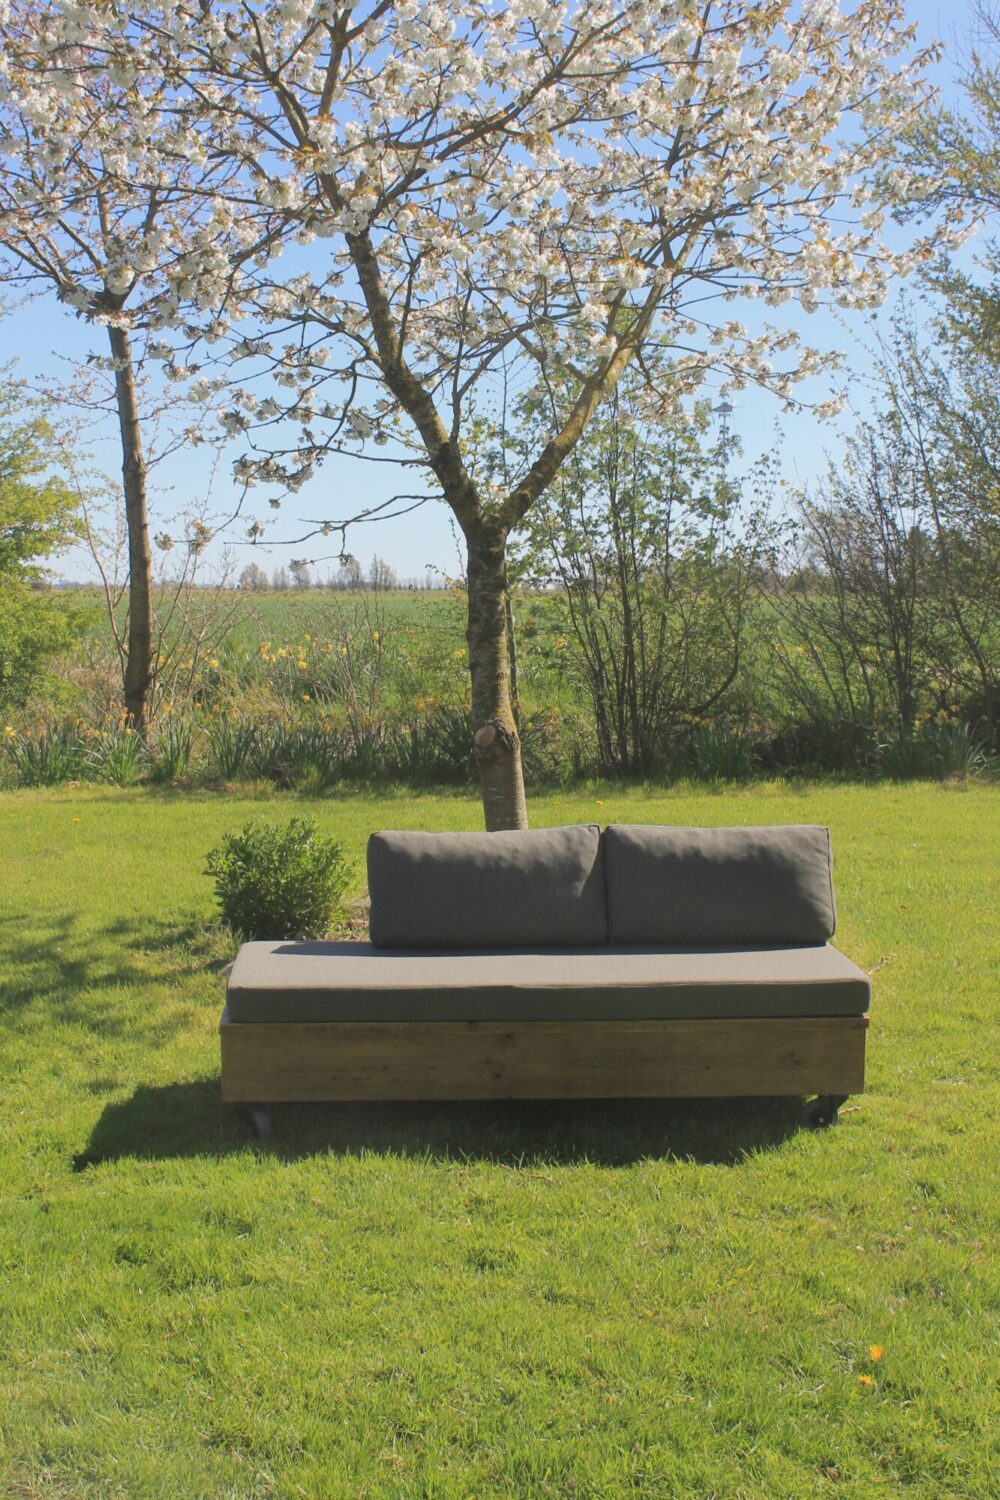 Bequemes Loungesofa aus Altholz für Garten und Terrasse.